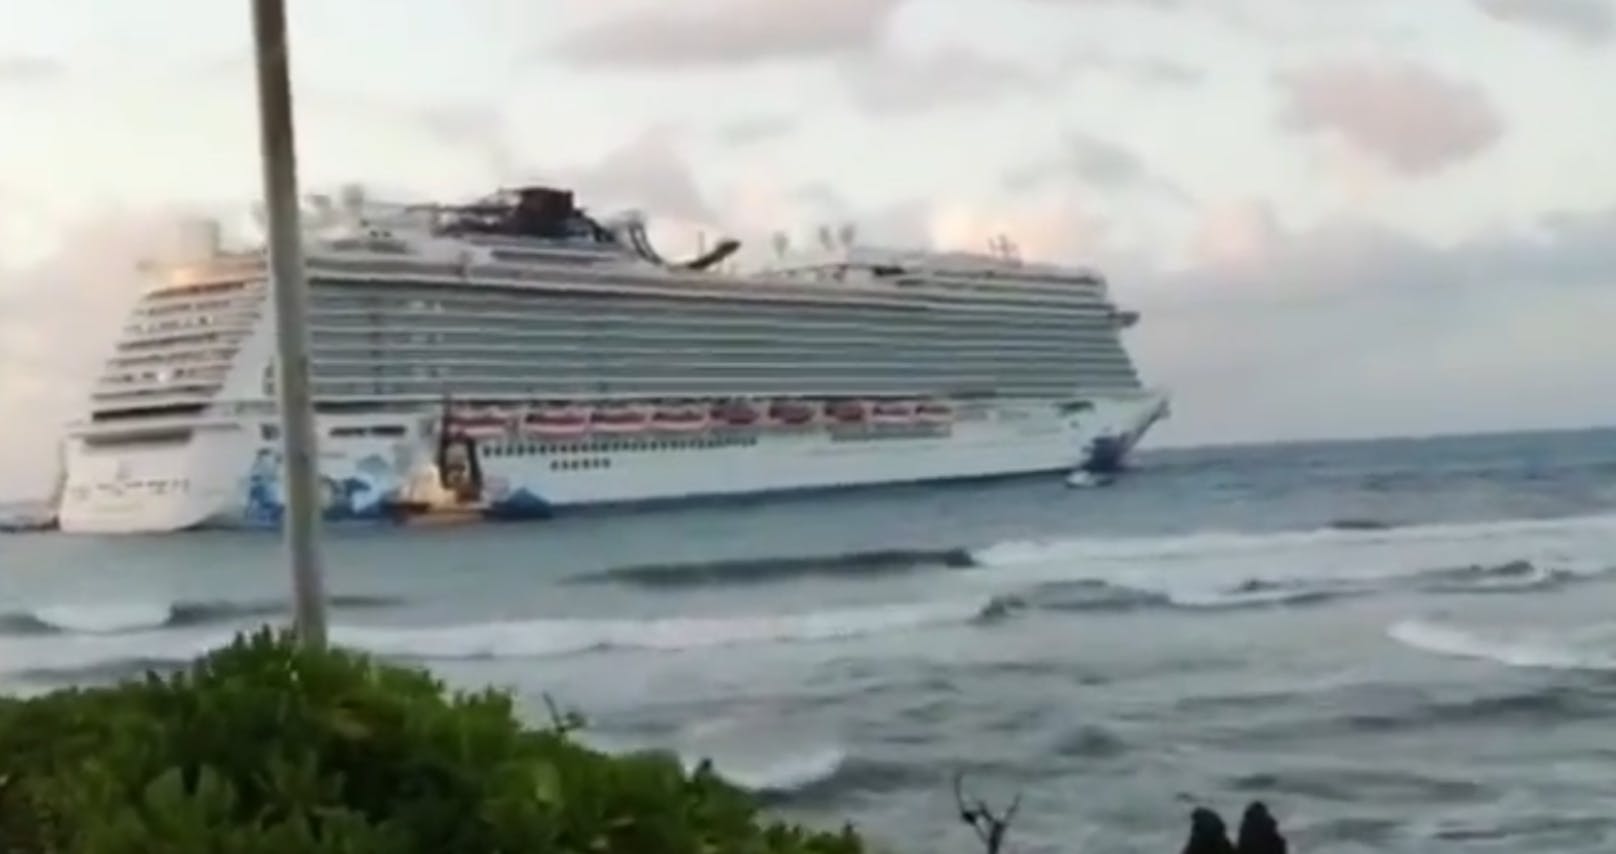 Die "Norwegian Escape" kommt nicht weiter. Das über 300 Meter lange Schiff ist vor der Dominikanischen Republik auf Grund gelaufen.